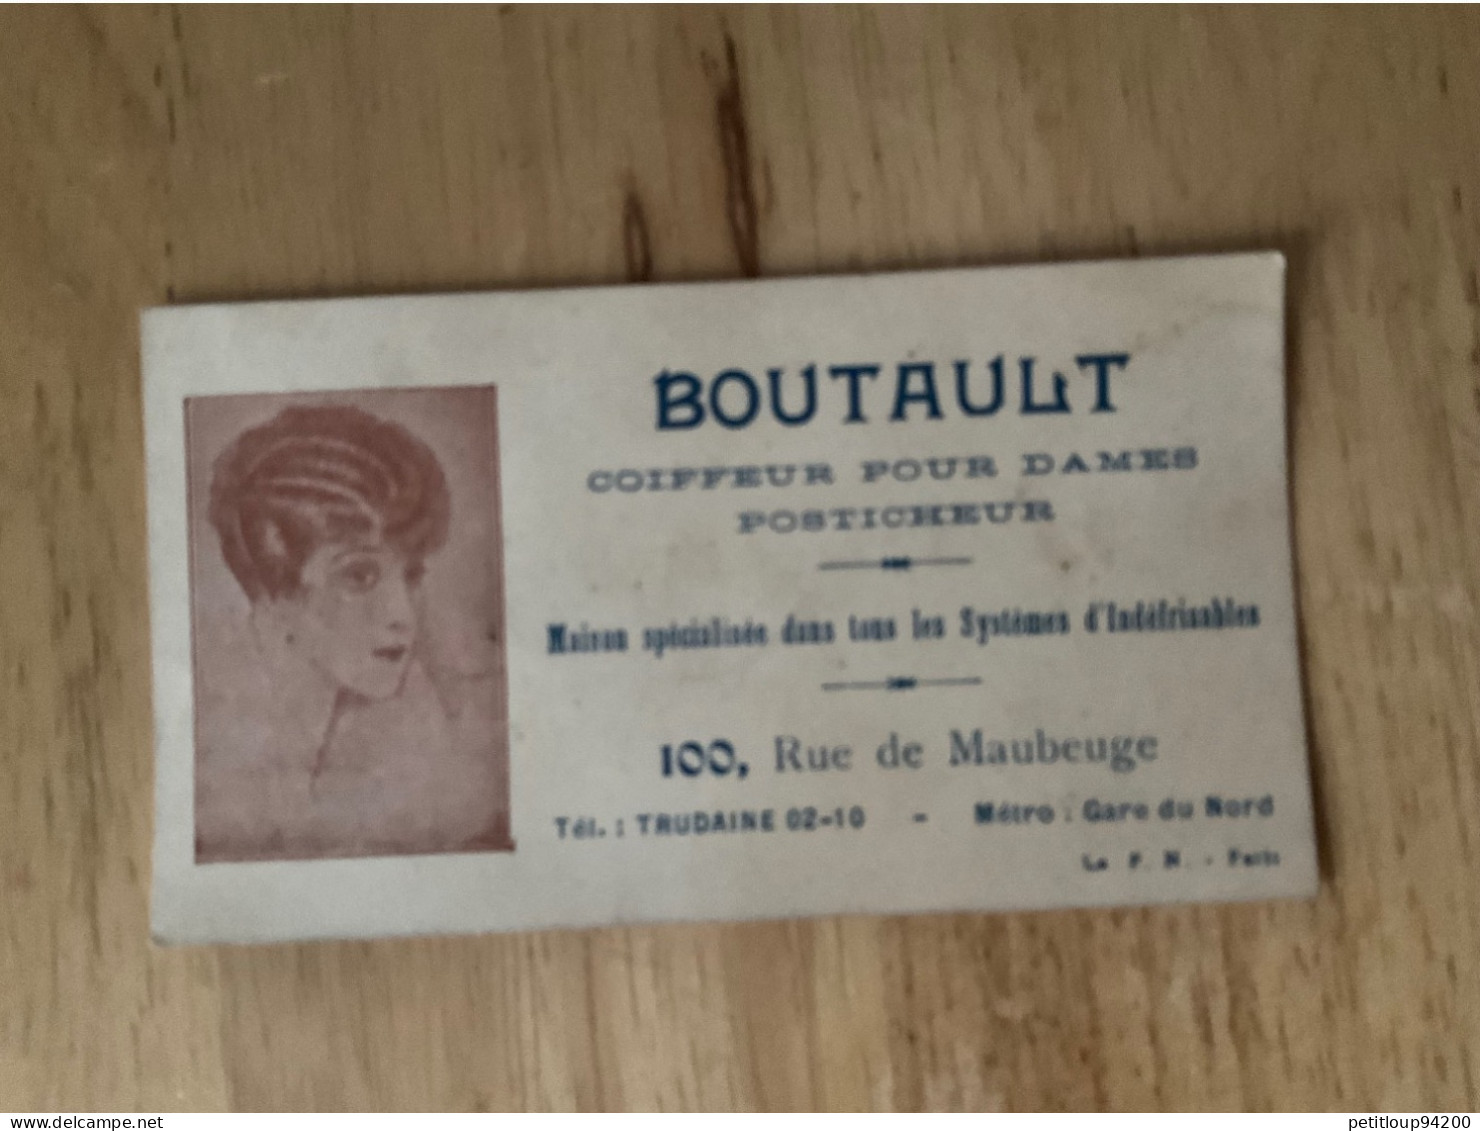 CARTE DE VISITE Coiffeur Pour Dames  Posticheur  BOUTAULT  Paris - Visitenkarten